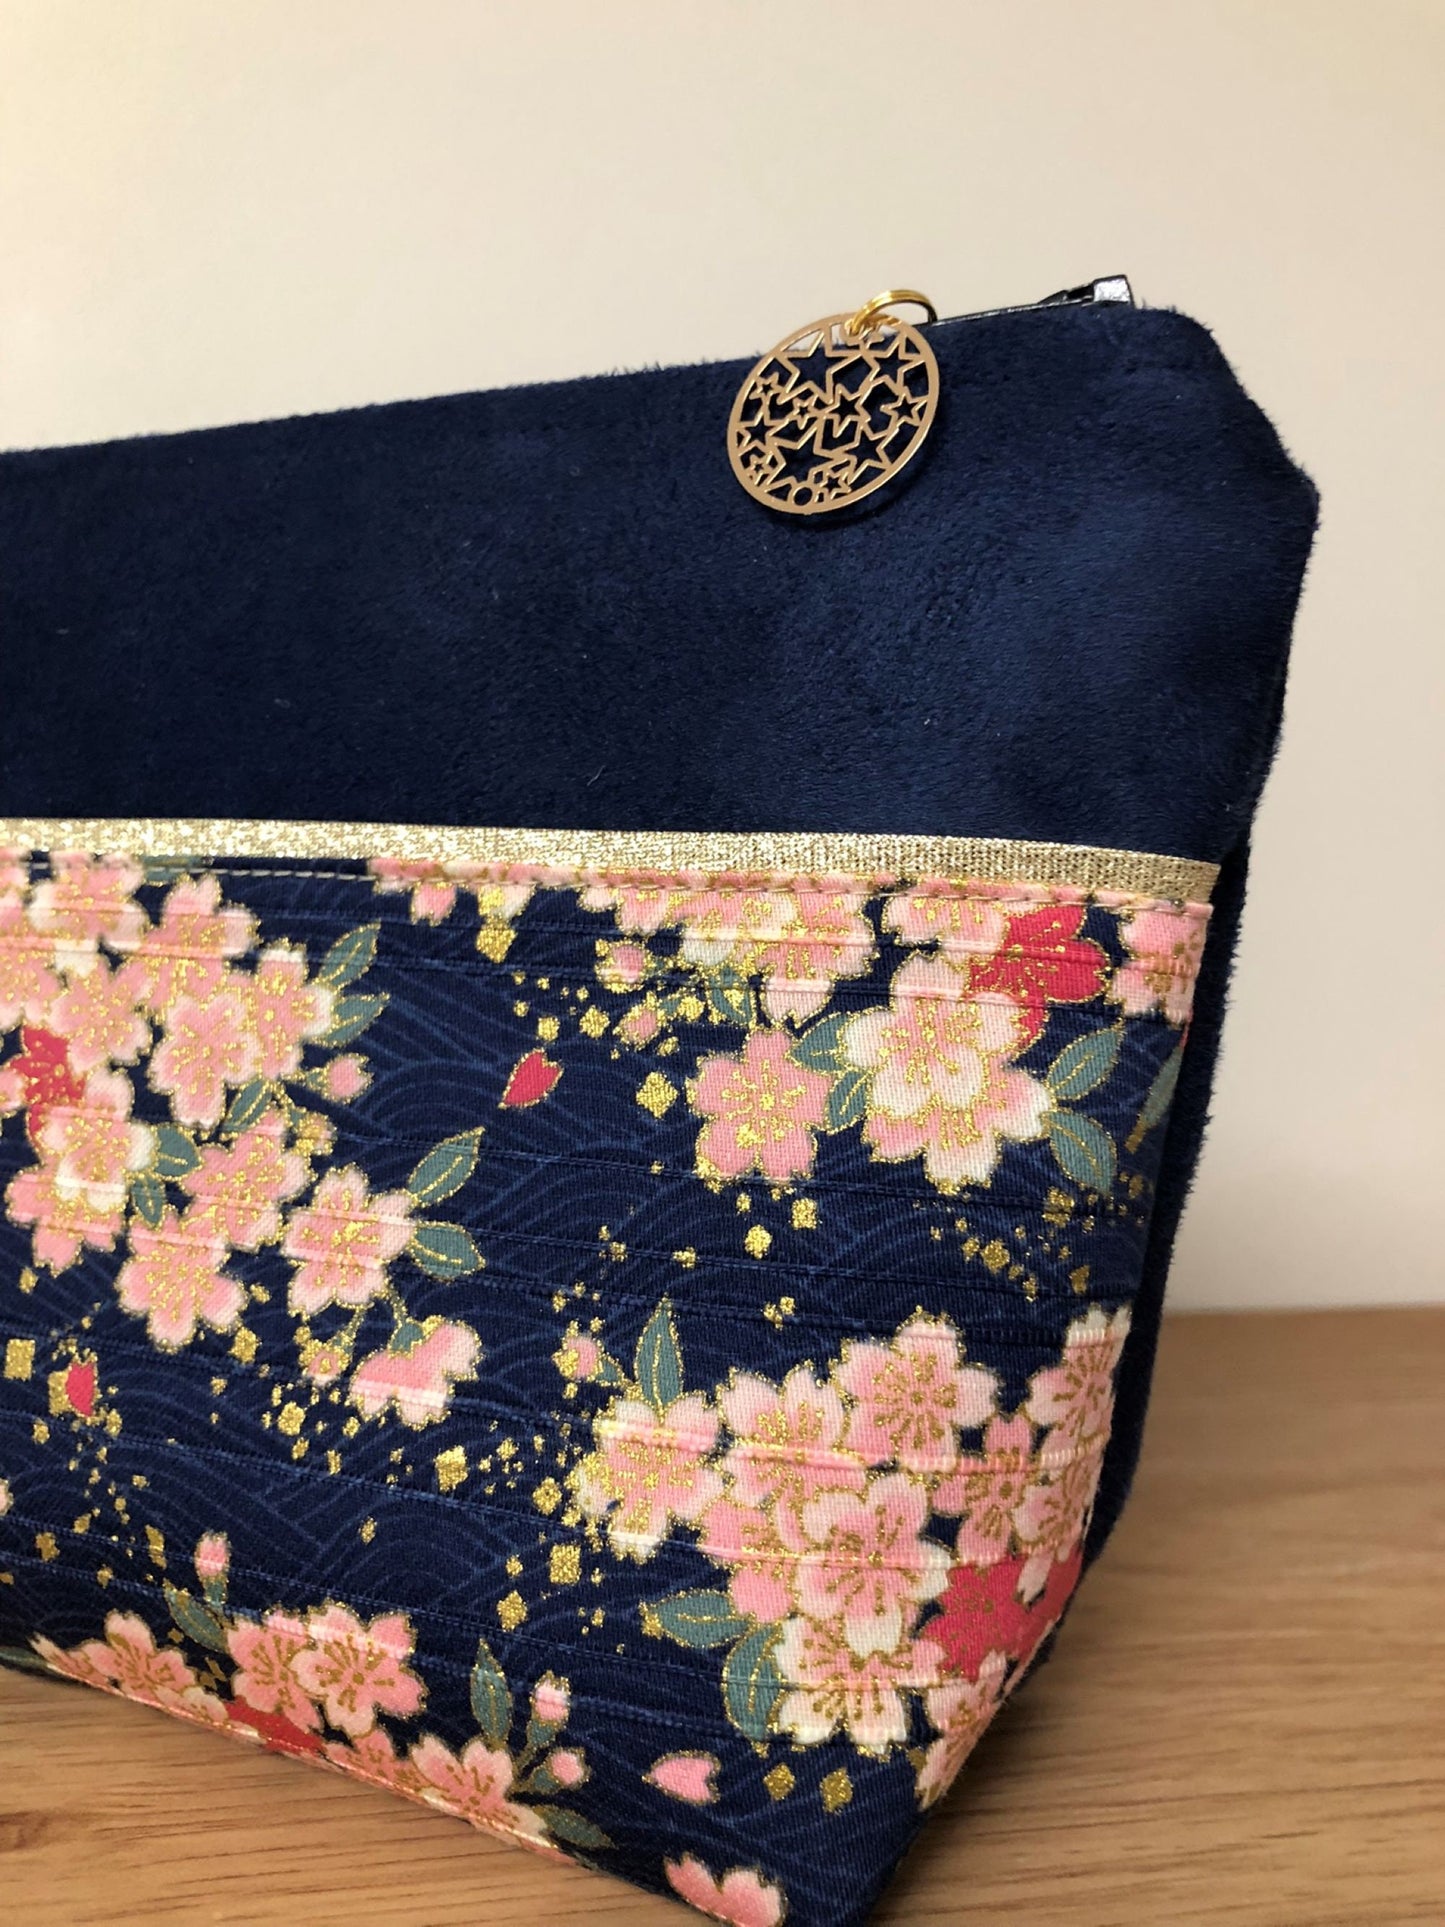 Pochette à maquillage bleu marine en tissu japonais fleurs de cerisier